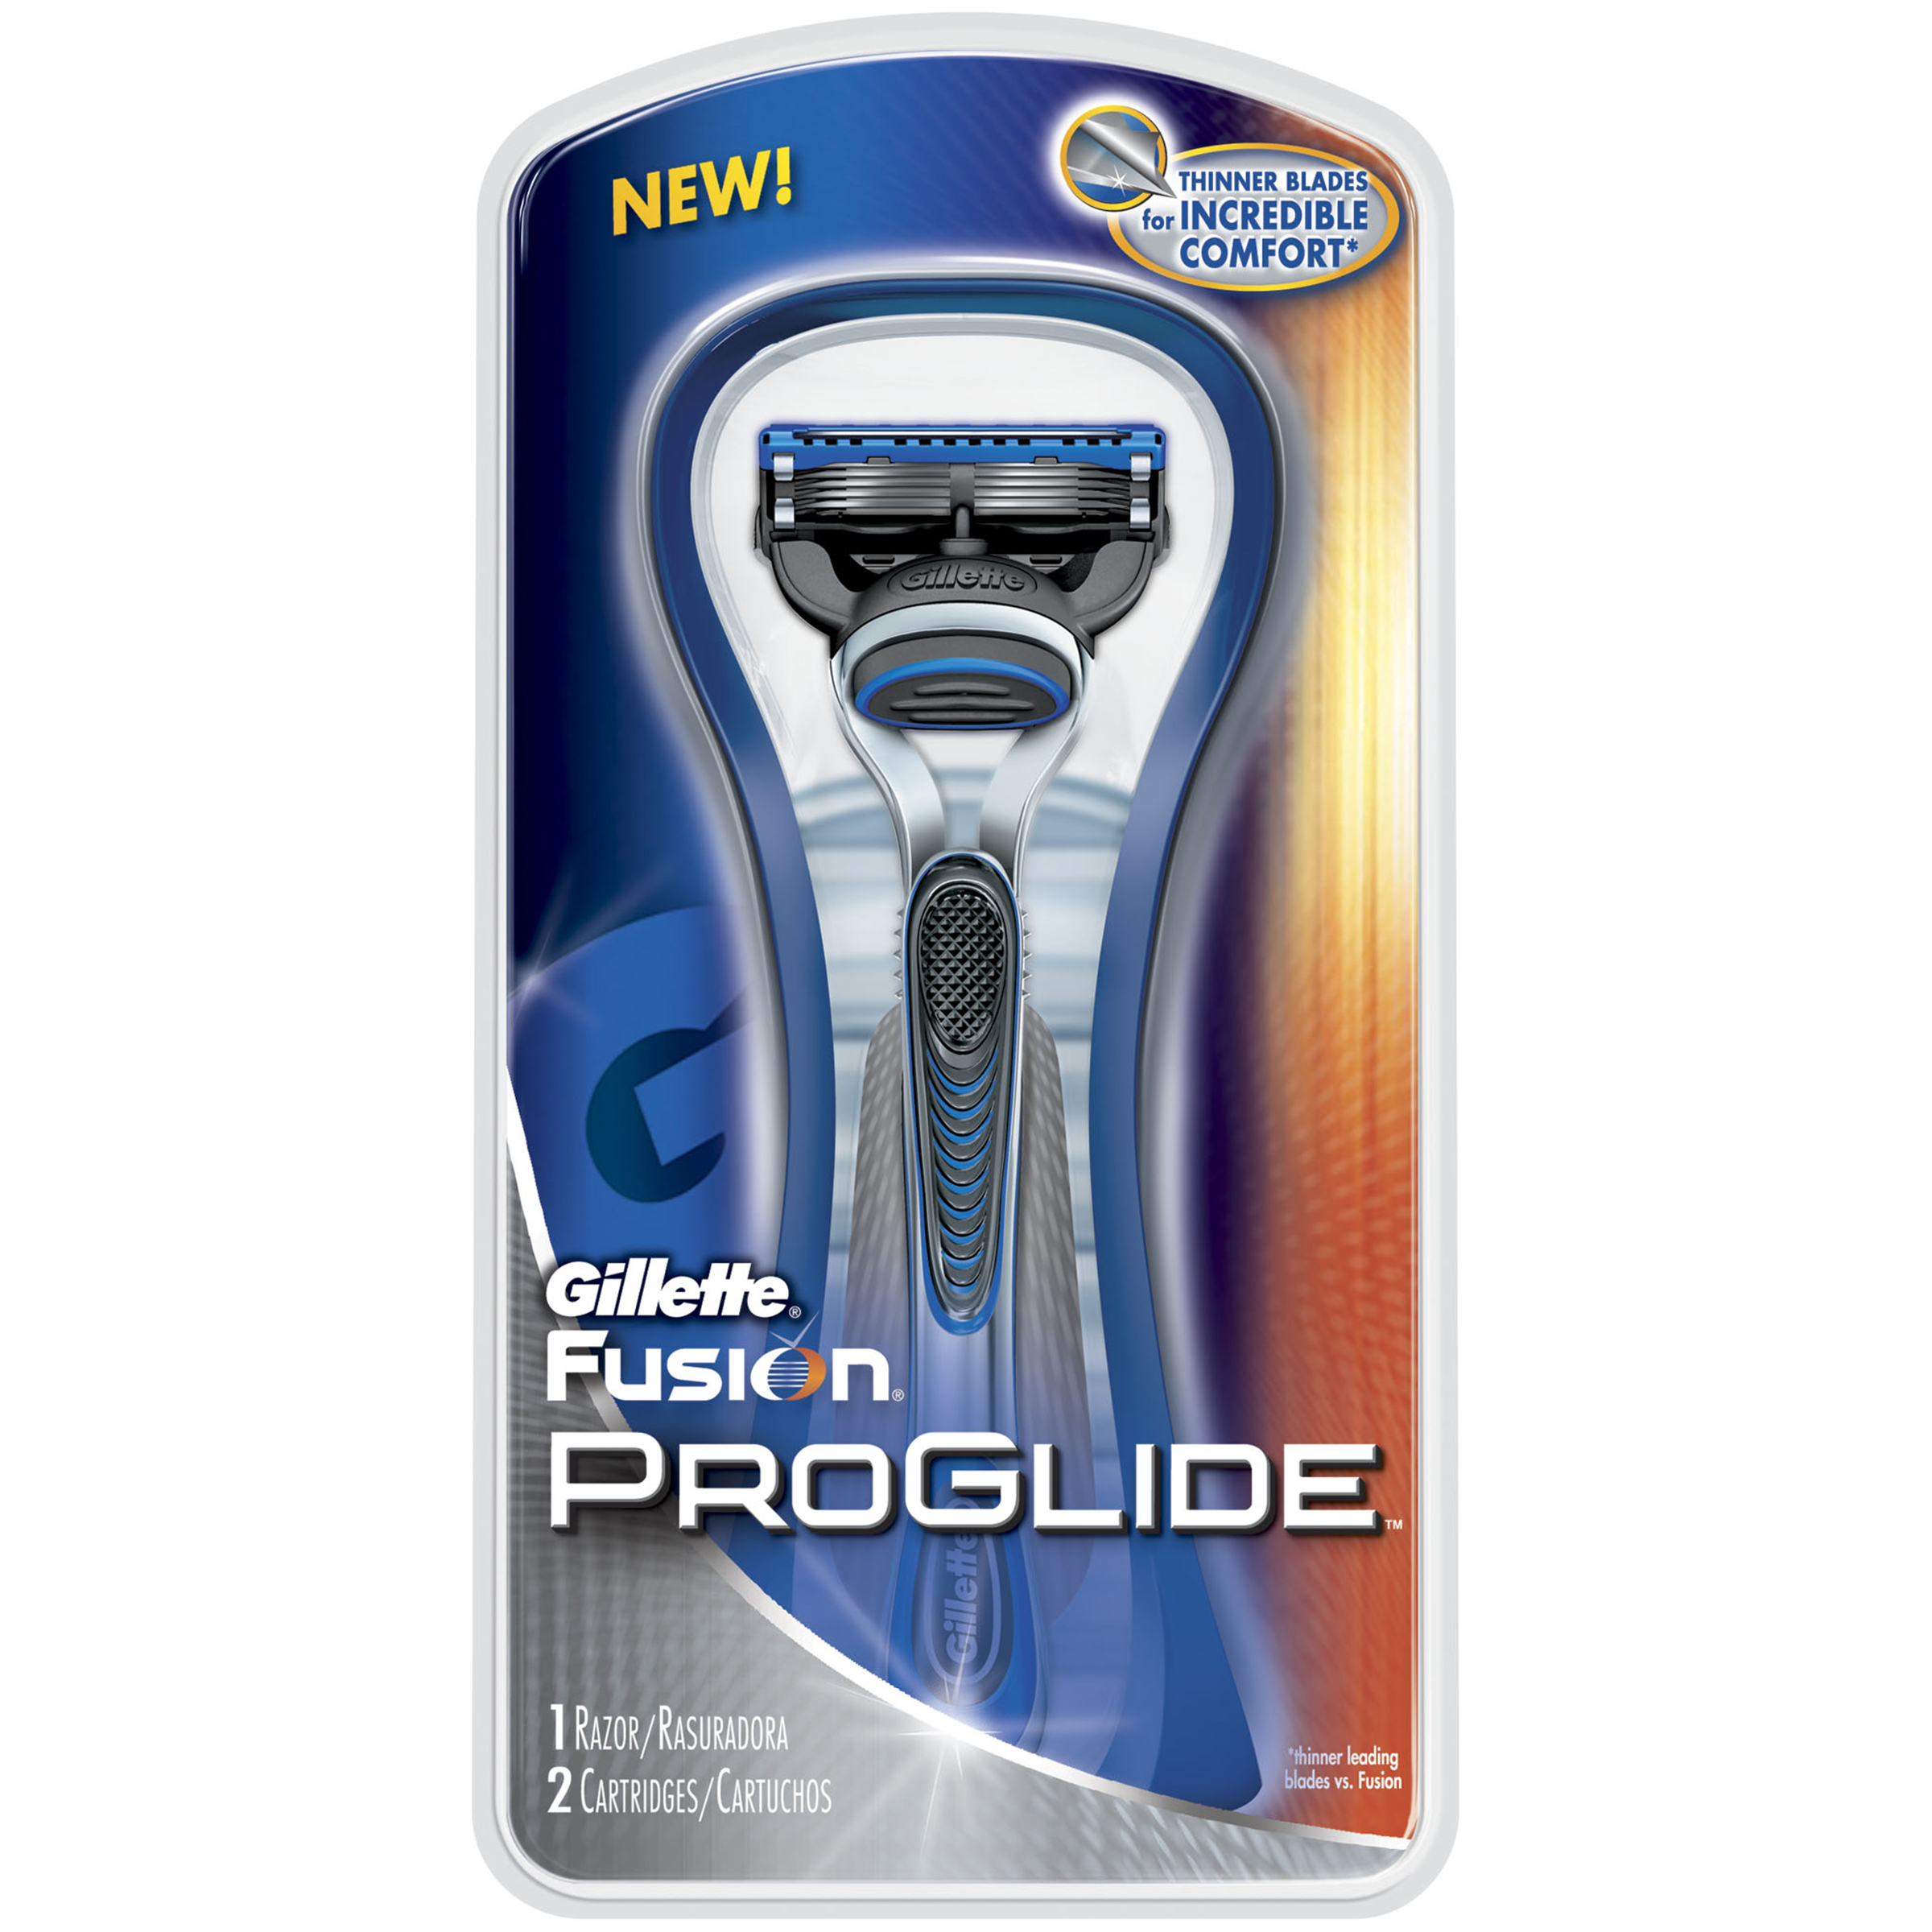 Gillette Fusion ProGlide Razor, 1 razor